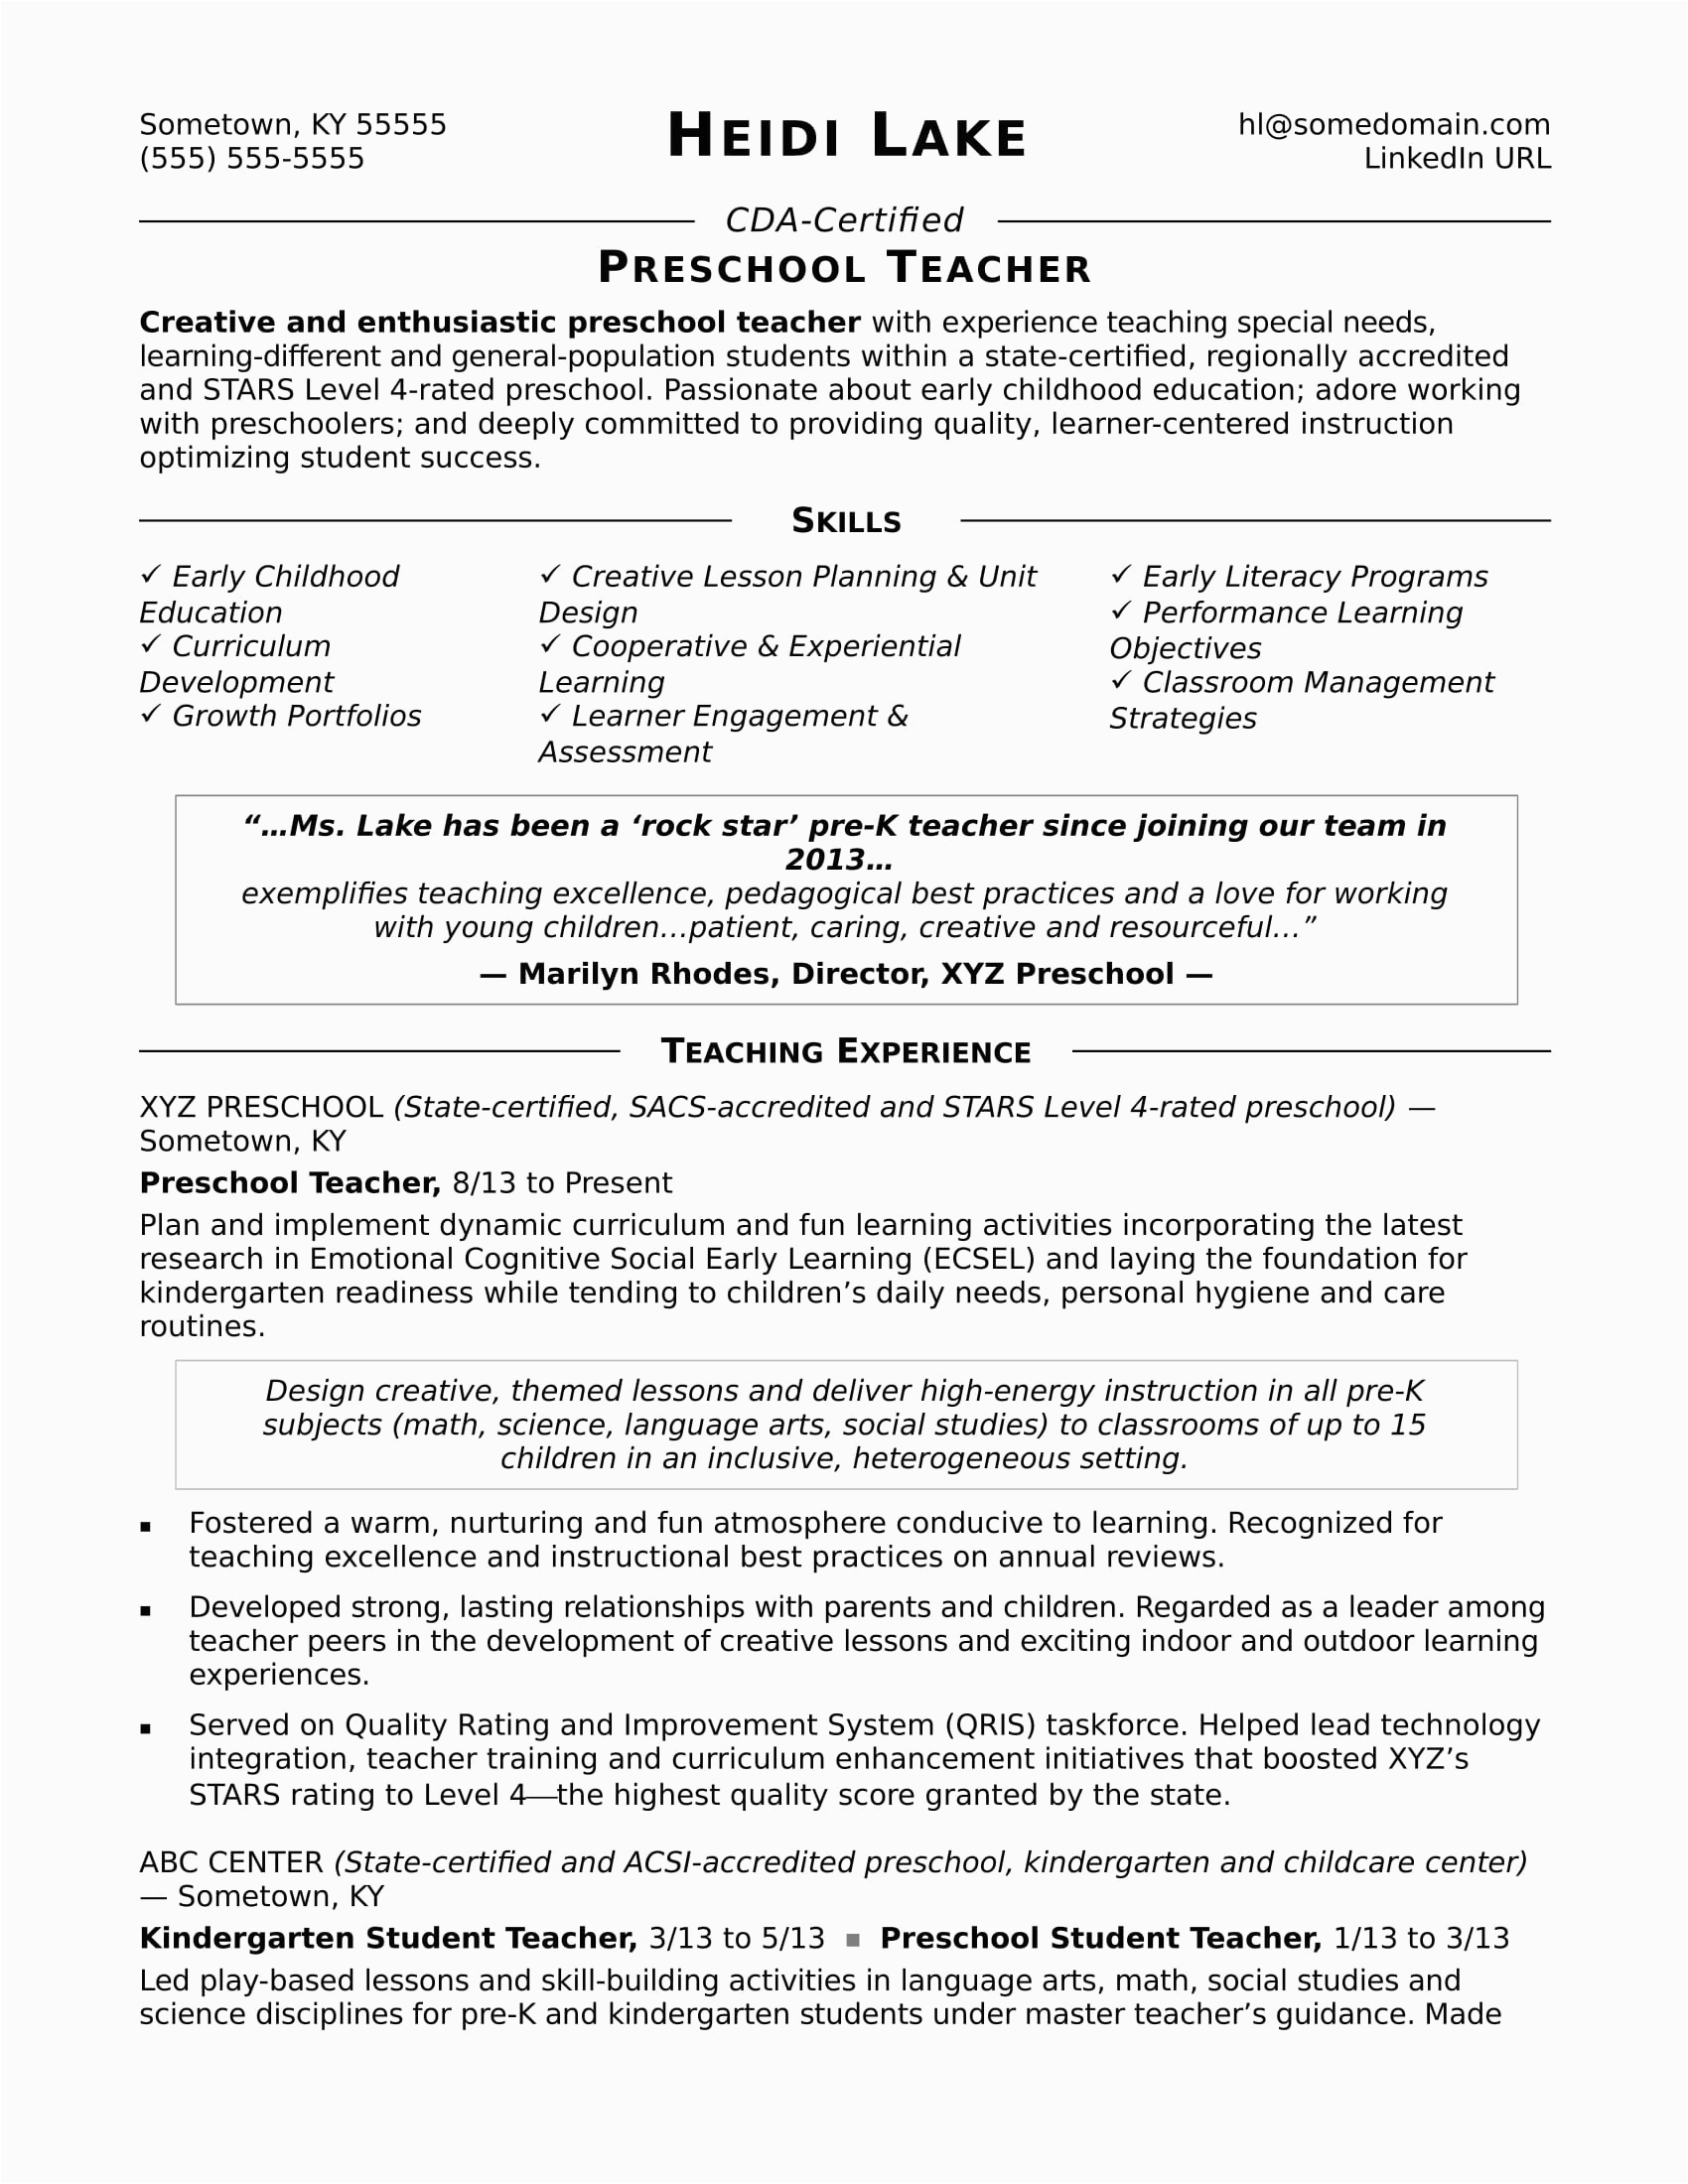 Sample Resume for Preschool Teaching Job Preschool Teacher Resume Sample